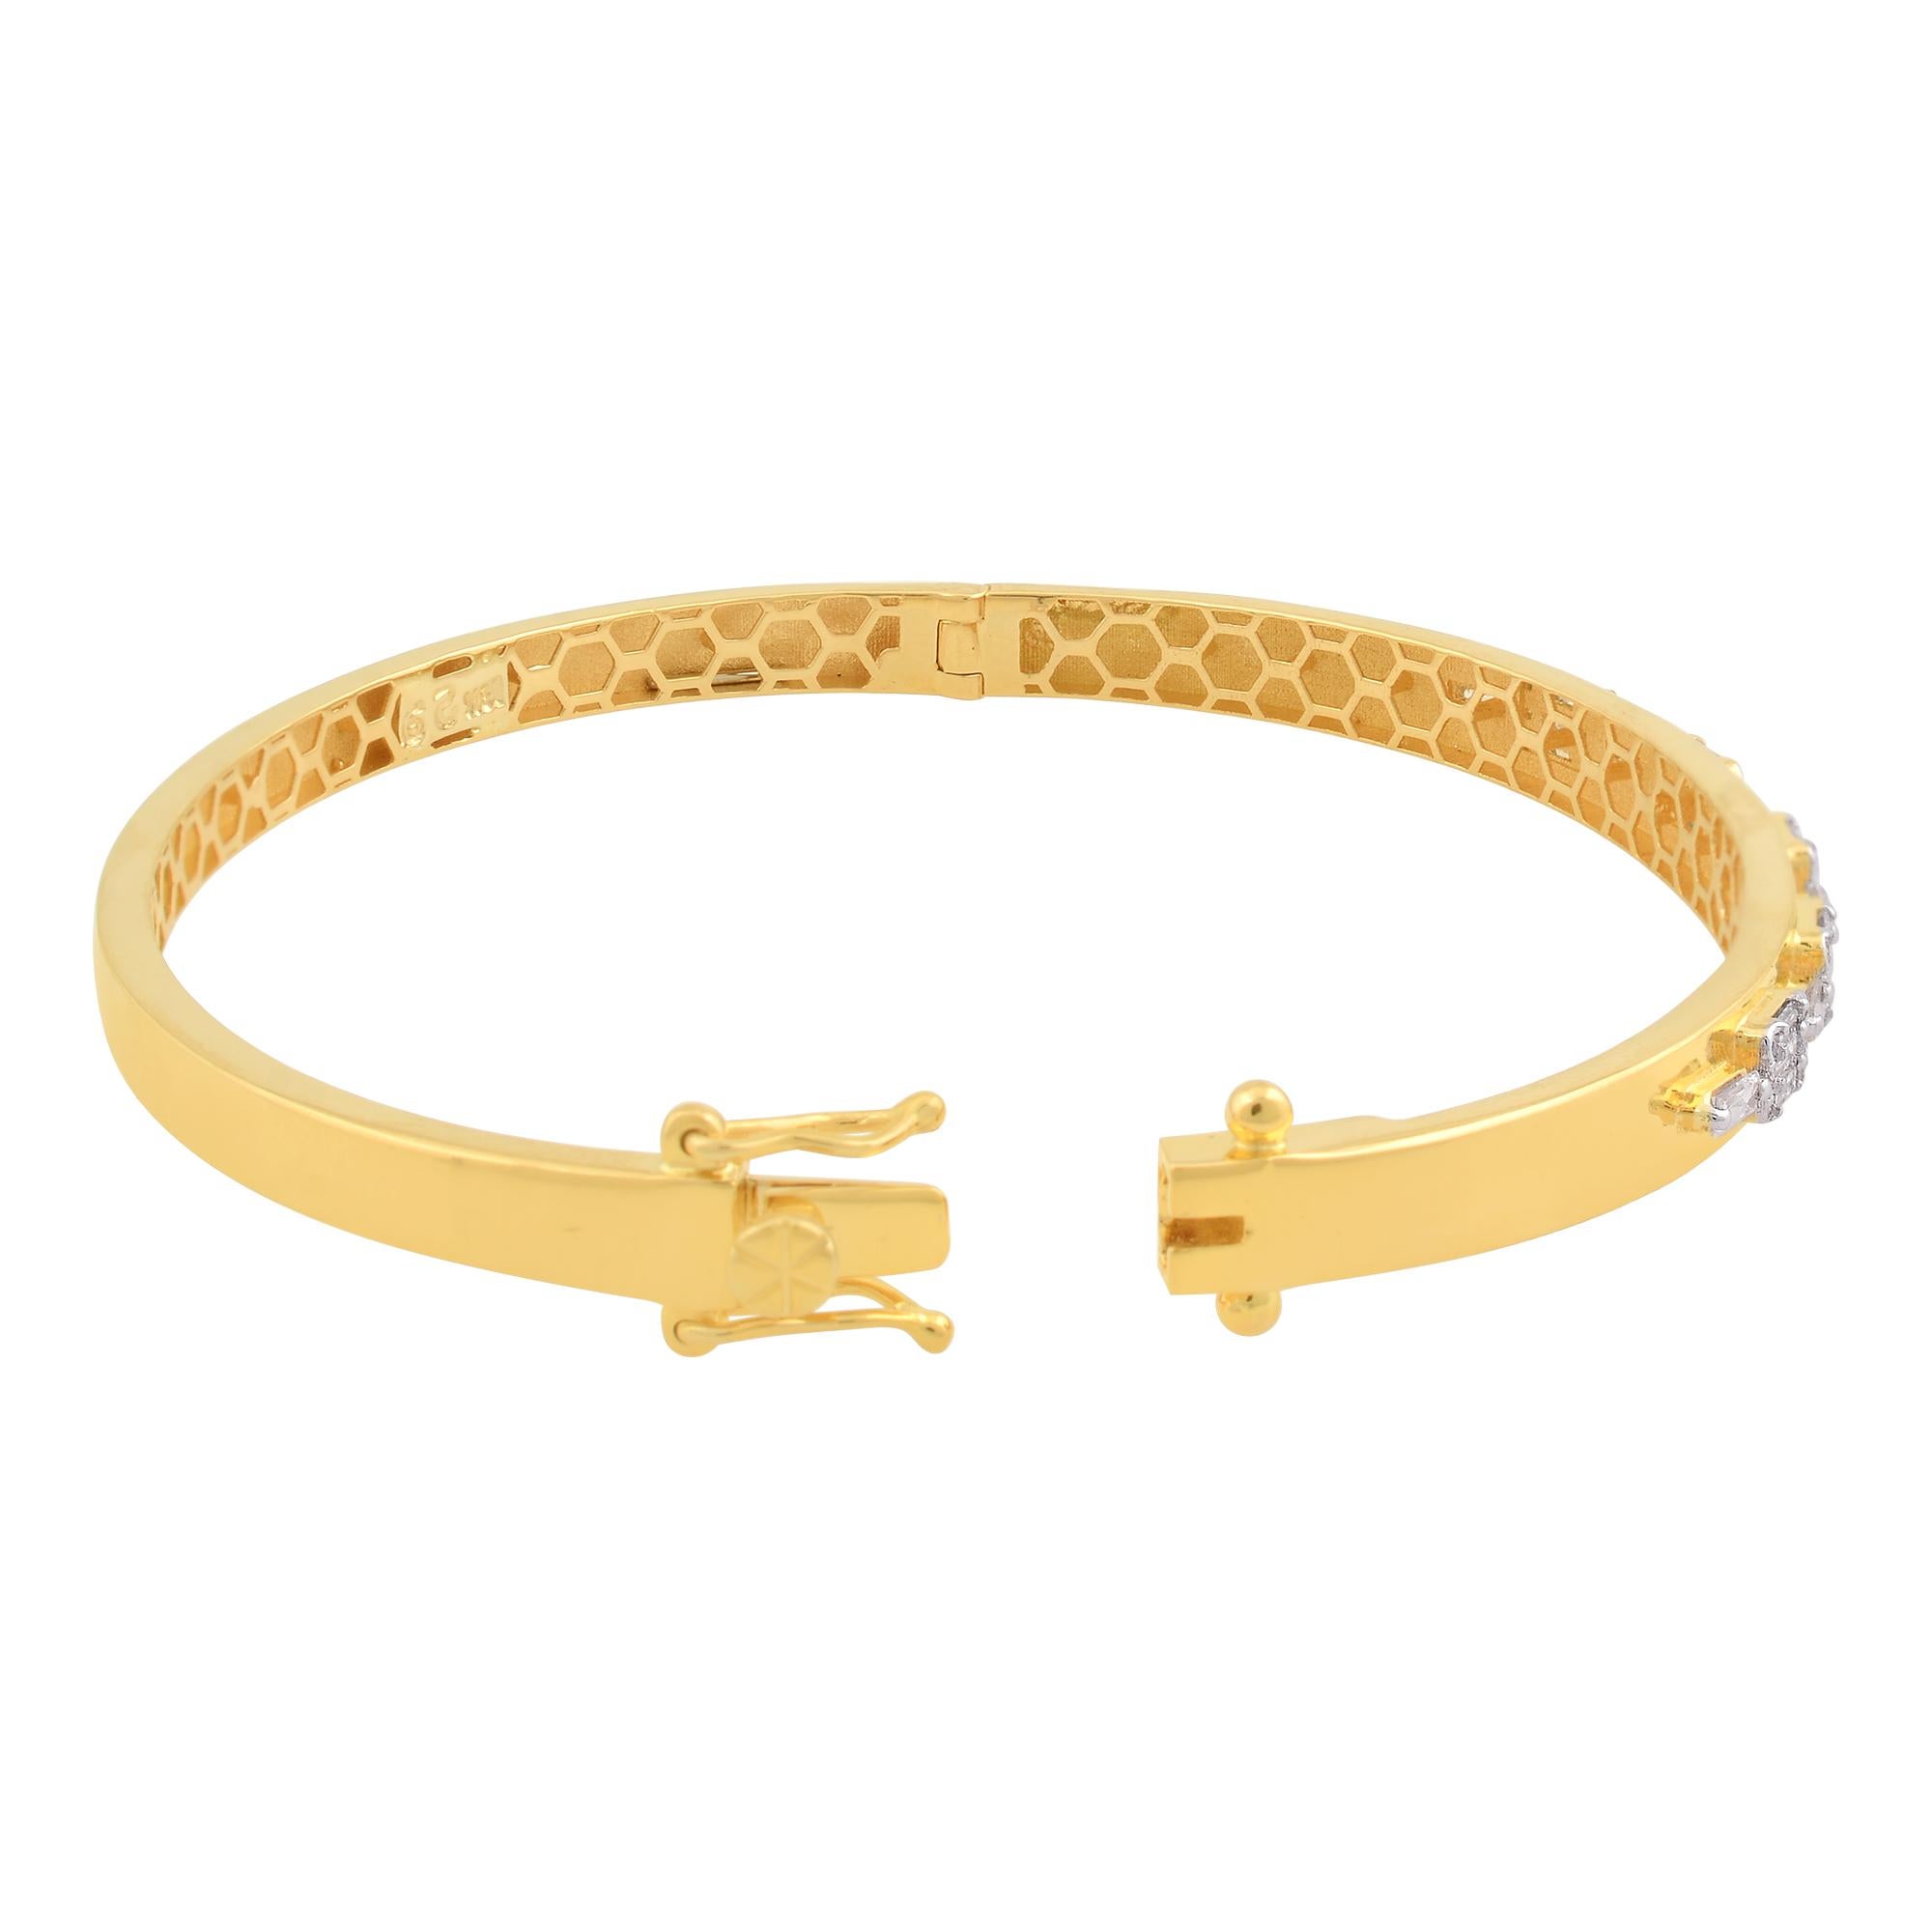 Fabriqué avec précision et souci du détail, ce bracelet à diamants baguettes illustre les normes les plus élevées en matière d'artisanat et de qualité. Son élégance durable en fait un ajout précieux à toute collection de bijoux, destiné à être